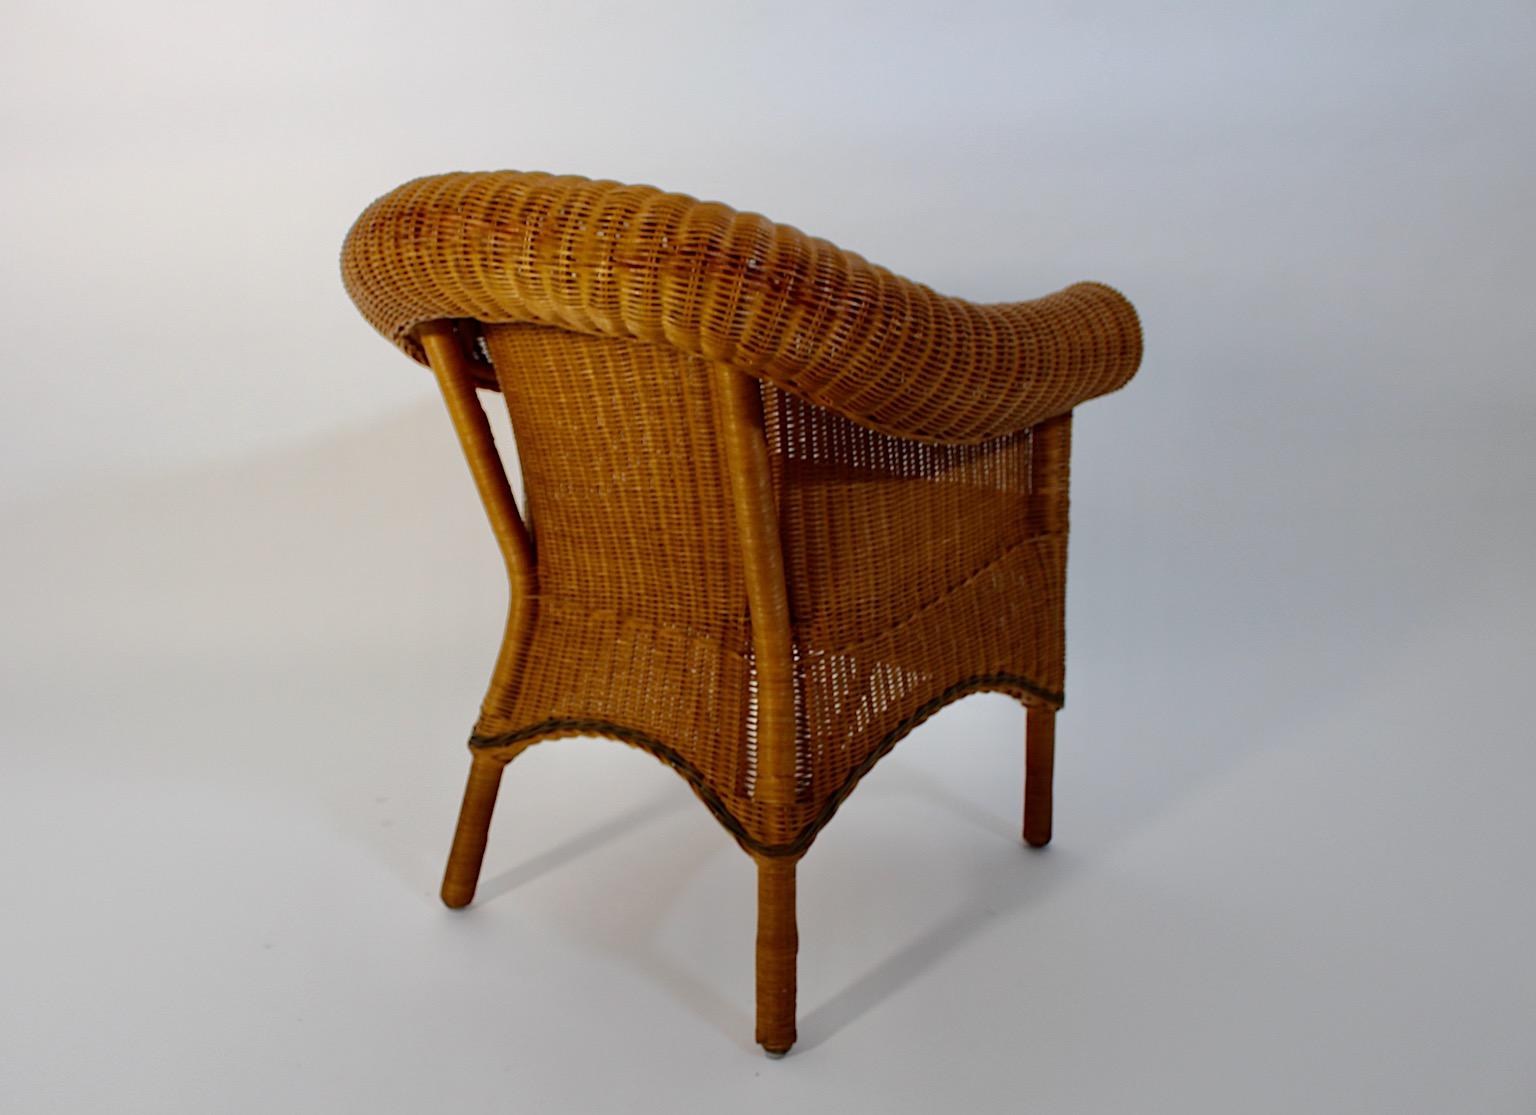 Austrian Jugendstil Vintage Rattan Armchair Lounge Chair Prag-Rudniker Korbwaren c 1910 For Sale